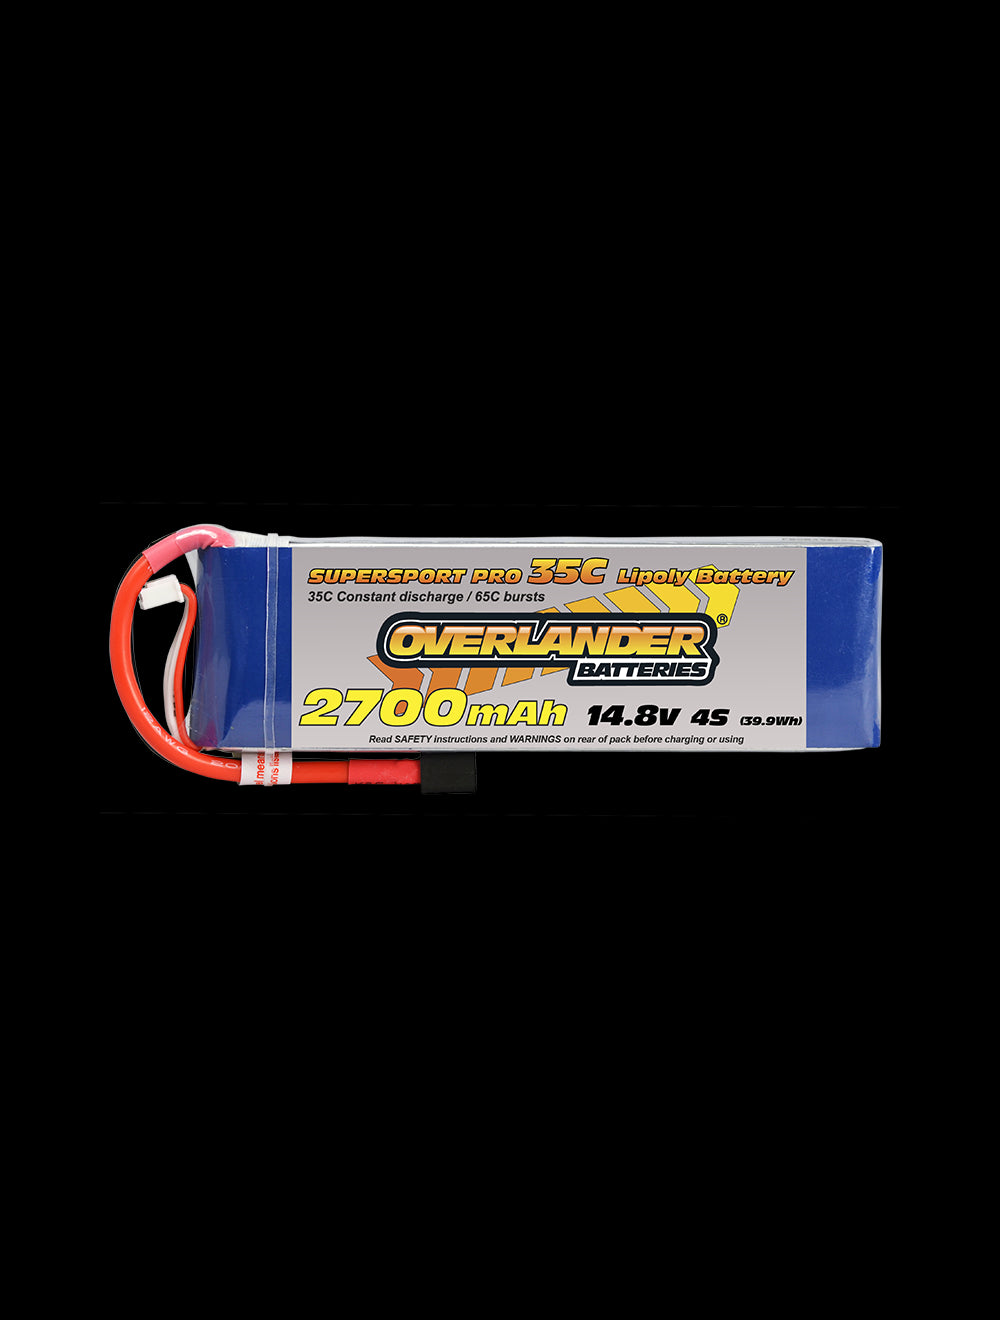 Overlander 2700mAh 14.8V 4S 35C Supersport Pro LiPo Battery - Deans Connector 2481